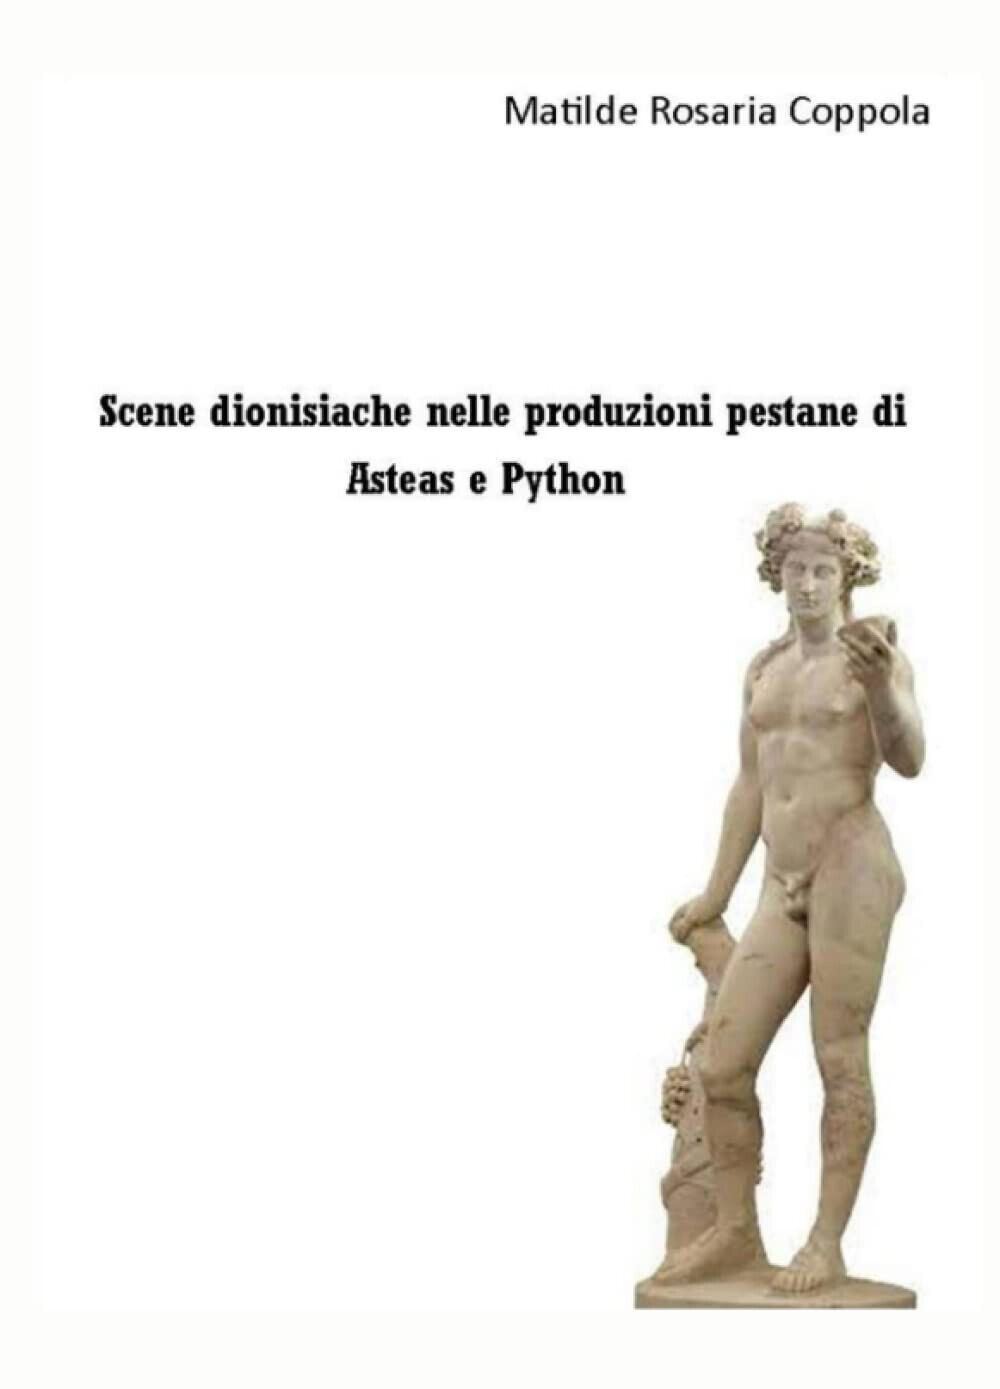 Scene dionisiache nelle produzioni pestane di Asteas e Python - ilmiolibro, 2021